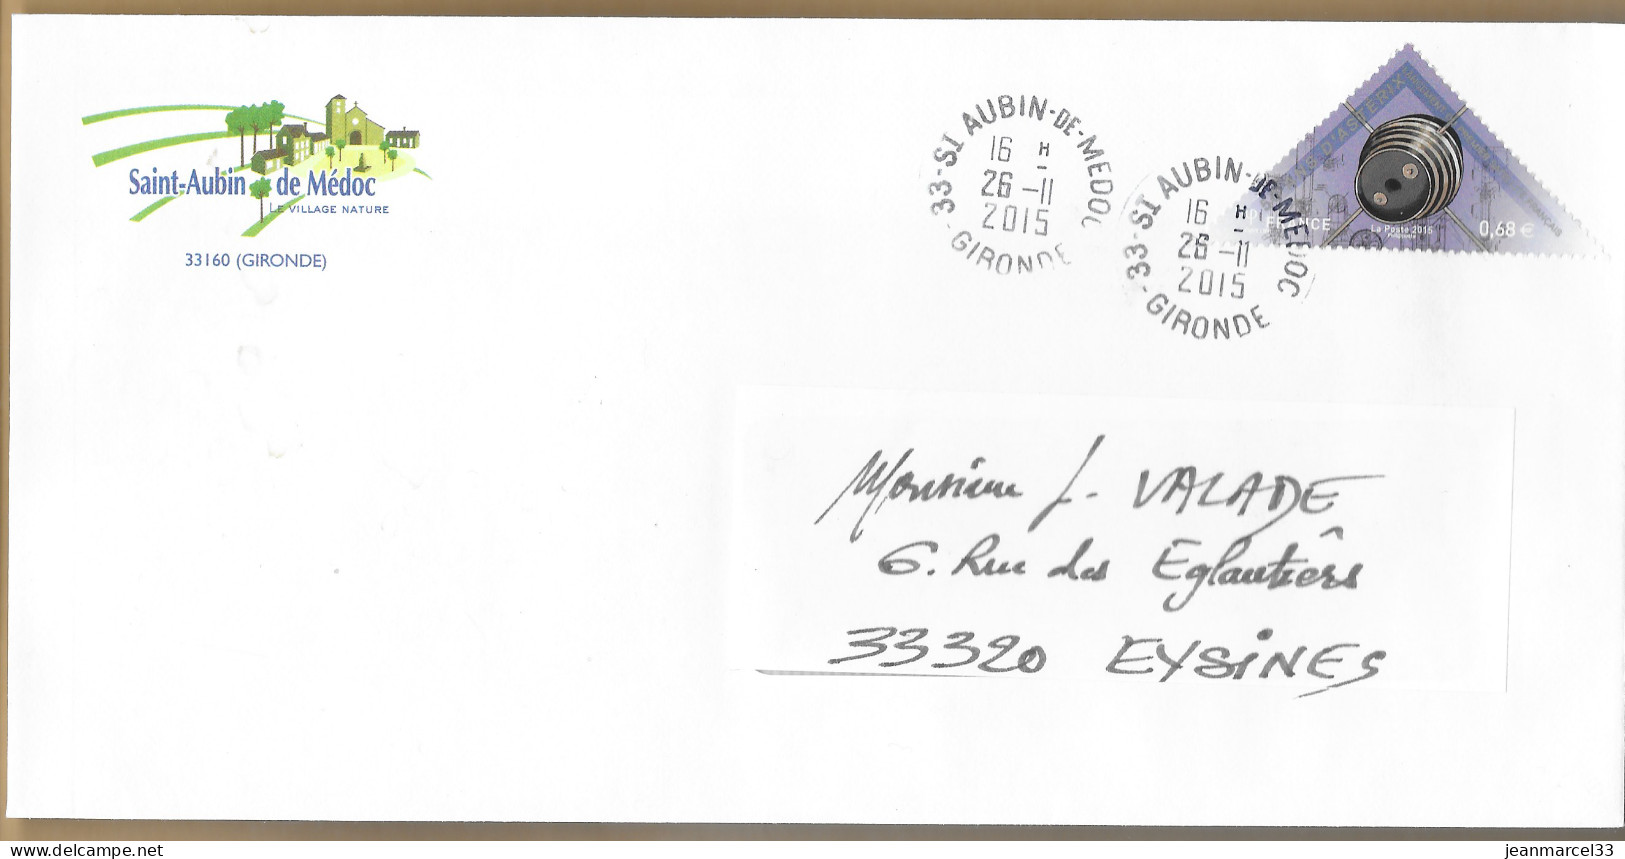 Nelle Aquitaine Satélite Astérix PJ Spécial Cachet Manuel Sans La Couronne St Aubin De Médoc 26-II 20I5 - Manual Postmarks